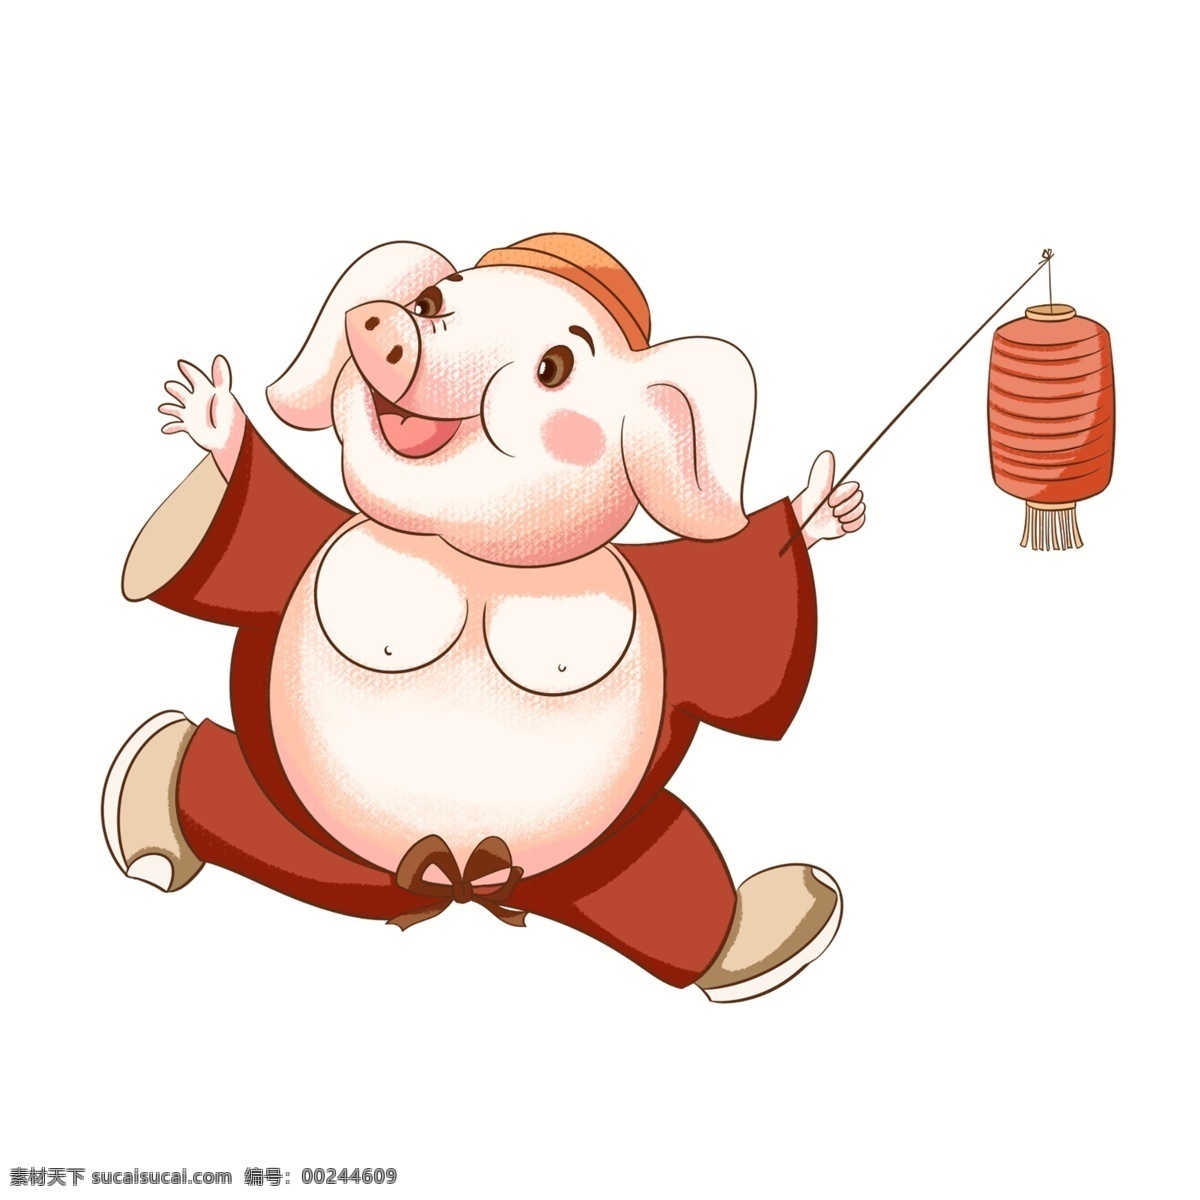 新年 贺岁 卡通 猪 灯笼 卡通猪 红色喜庆 春节 猪年大吉 红灯笼 庆祝元旦 祝福 可爱